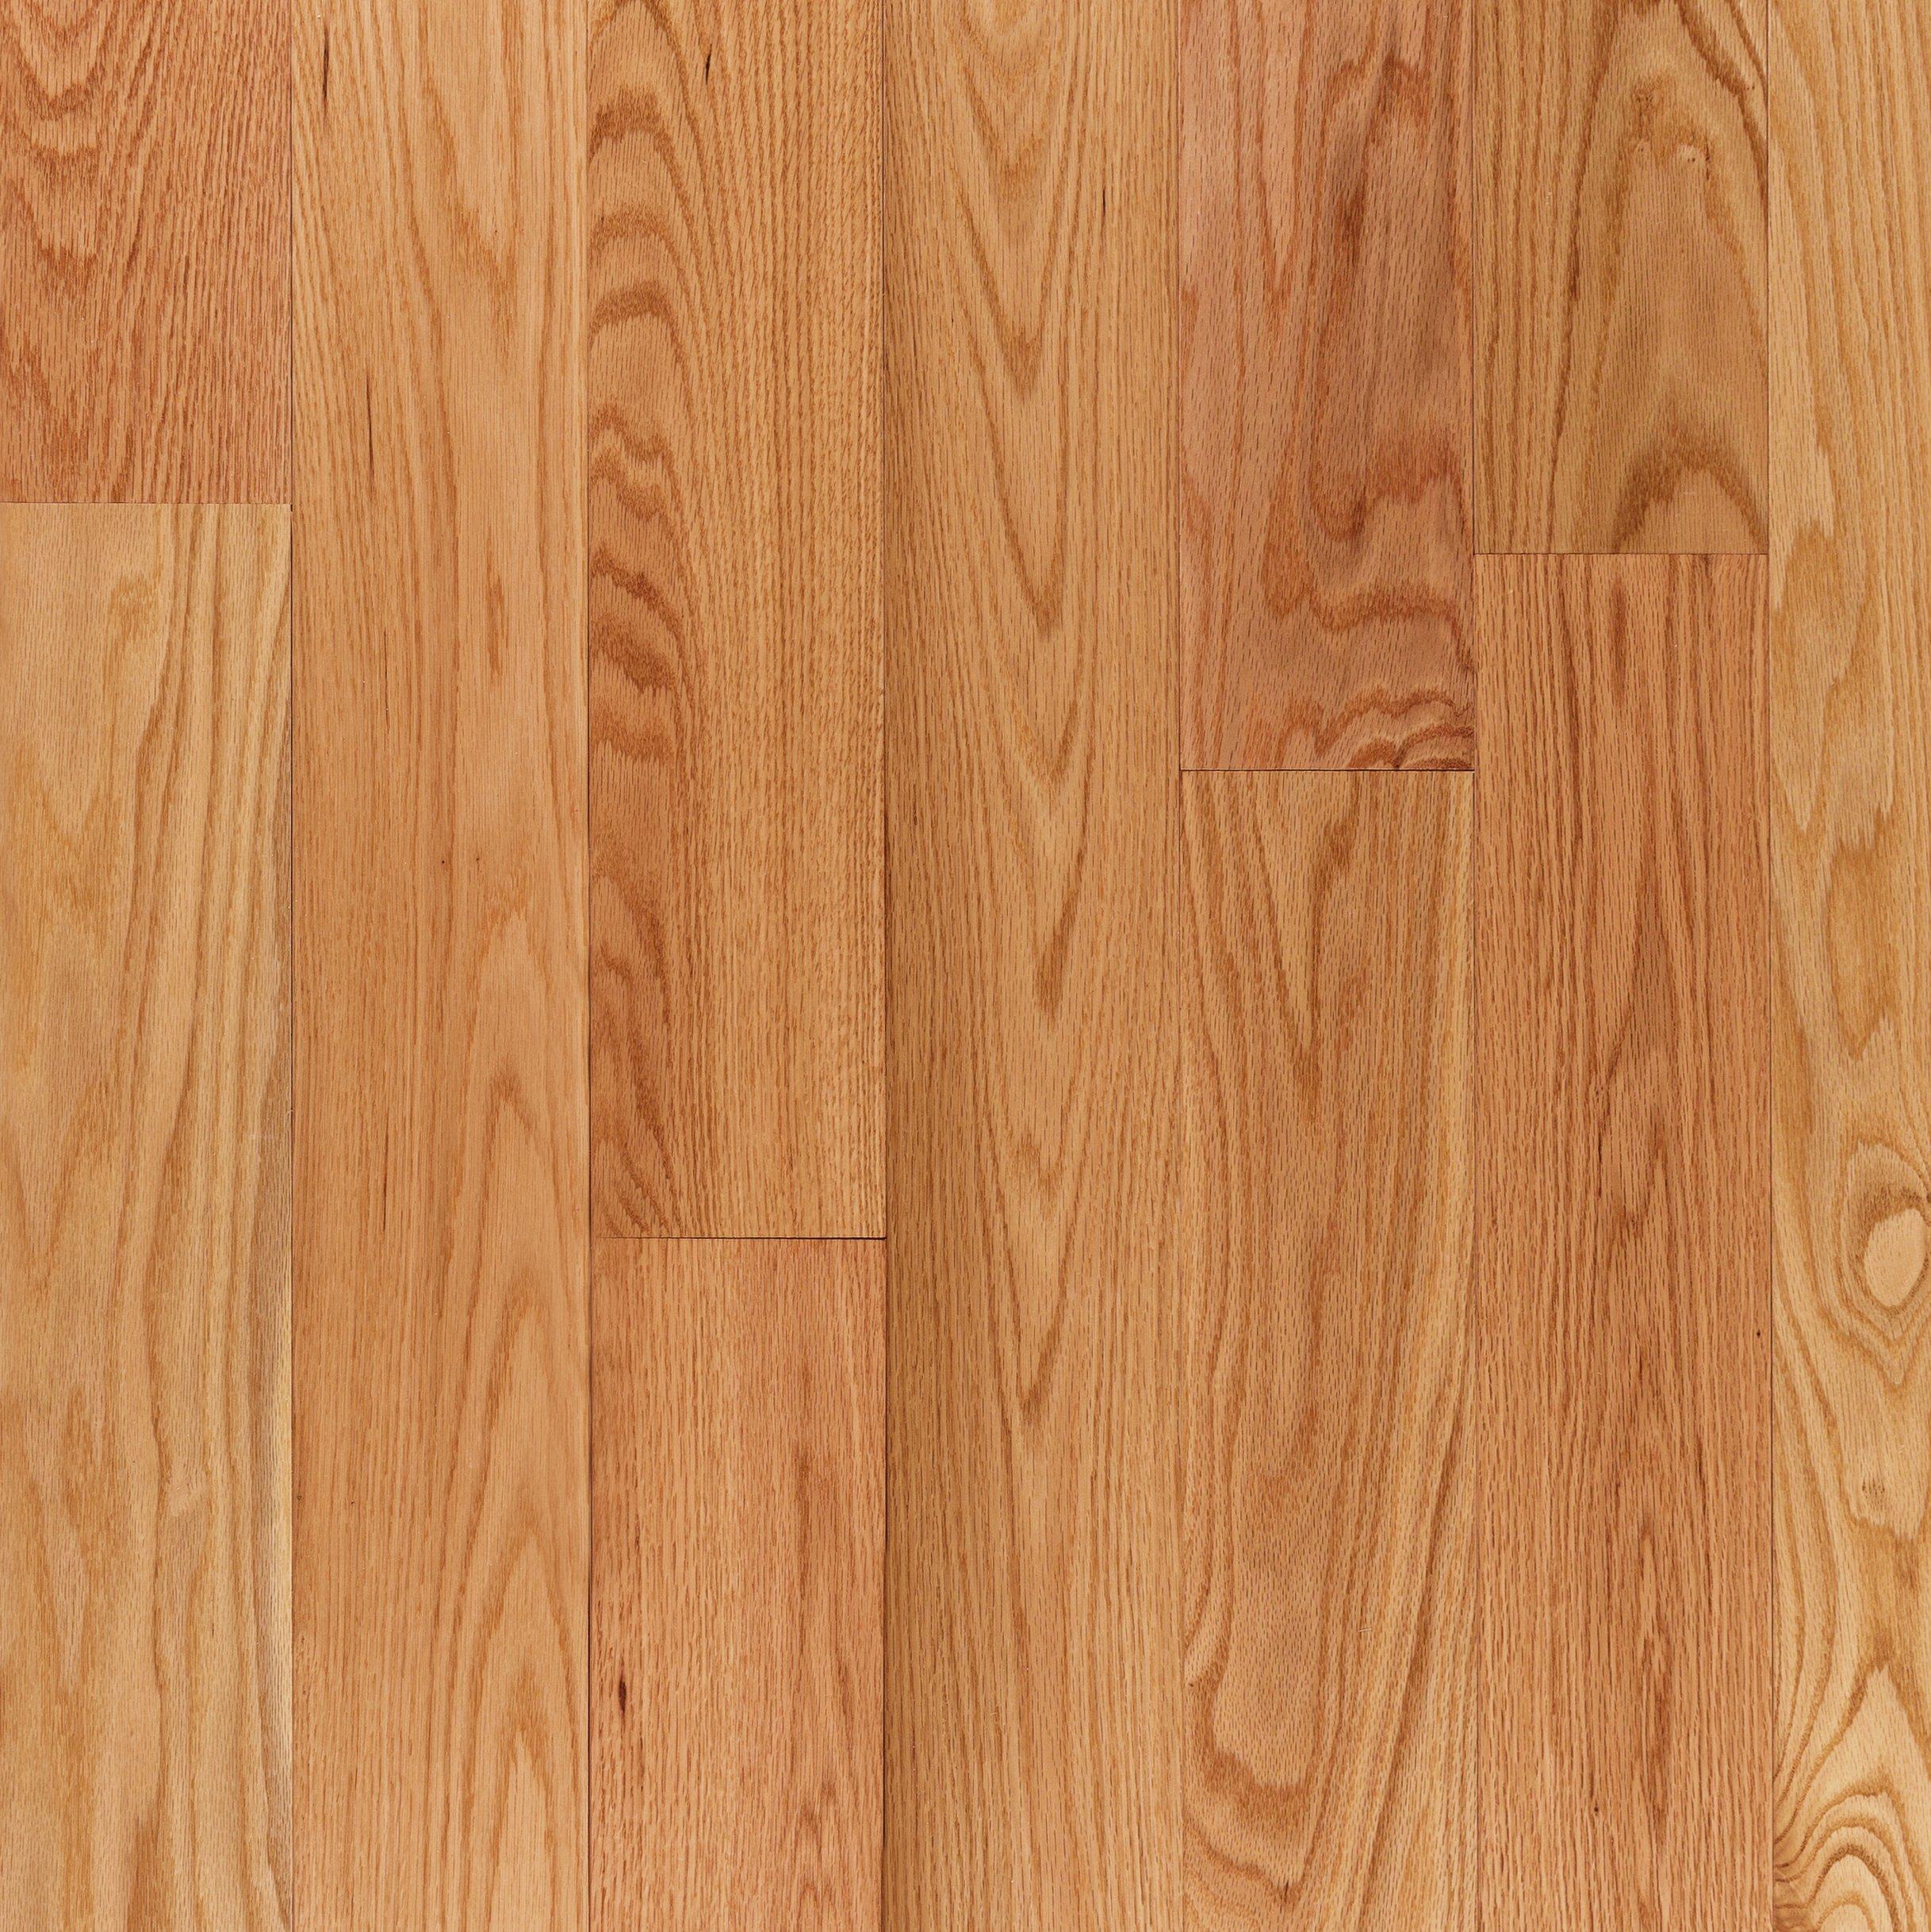 Red Oak Smooth Solid Hardwood, Red Oak Select Hardwood Flooring